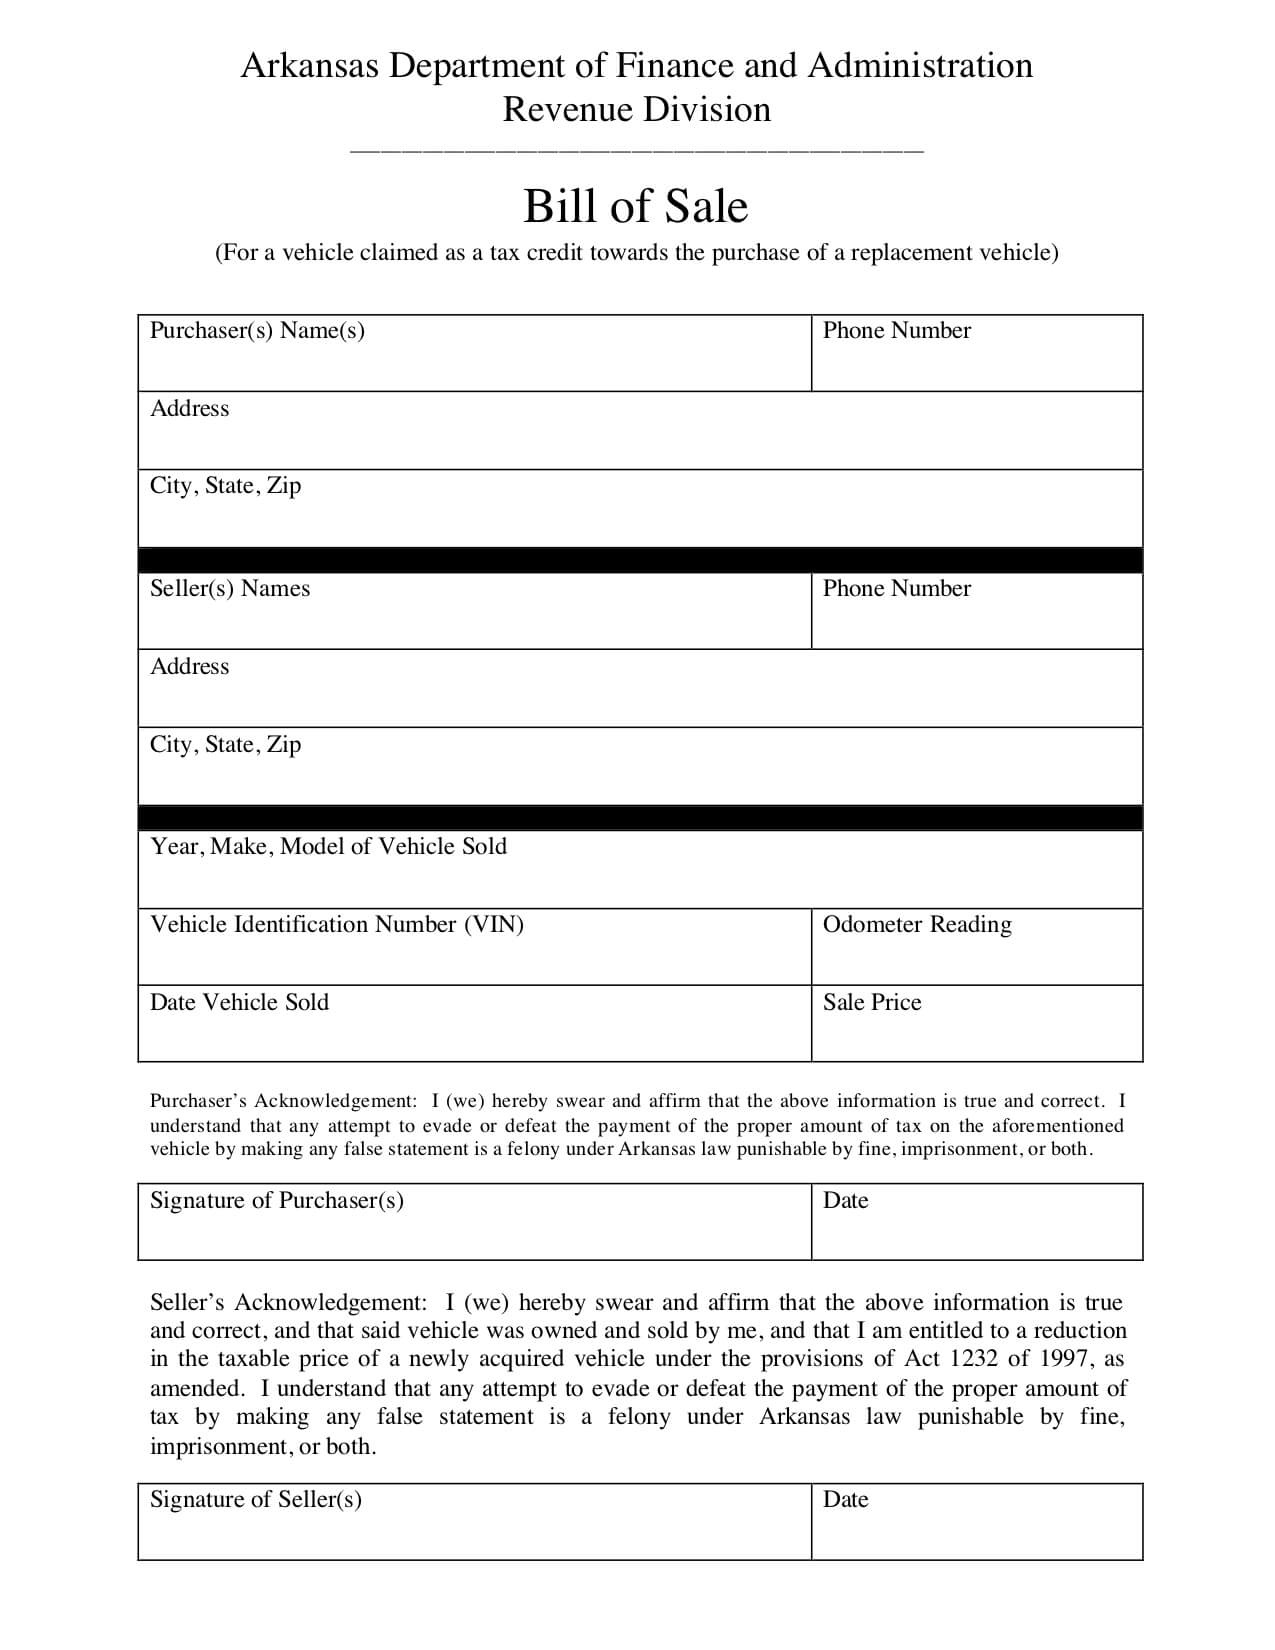 Free Arkansas Bill Of Sale Form - Pdf Template | Legaltemplates With Bill Of Sale For Car Template